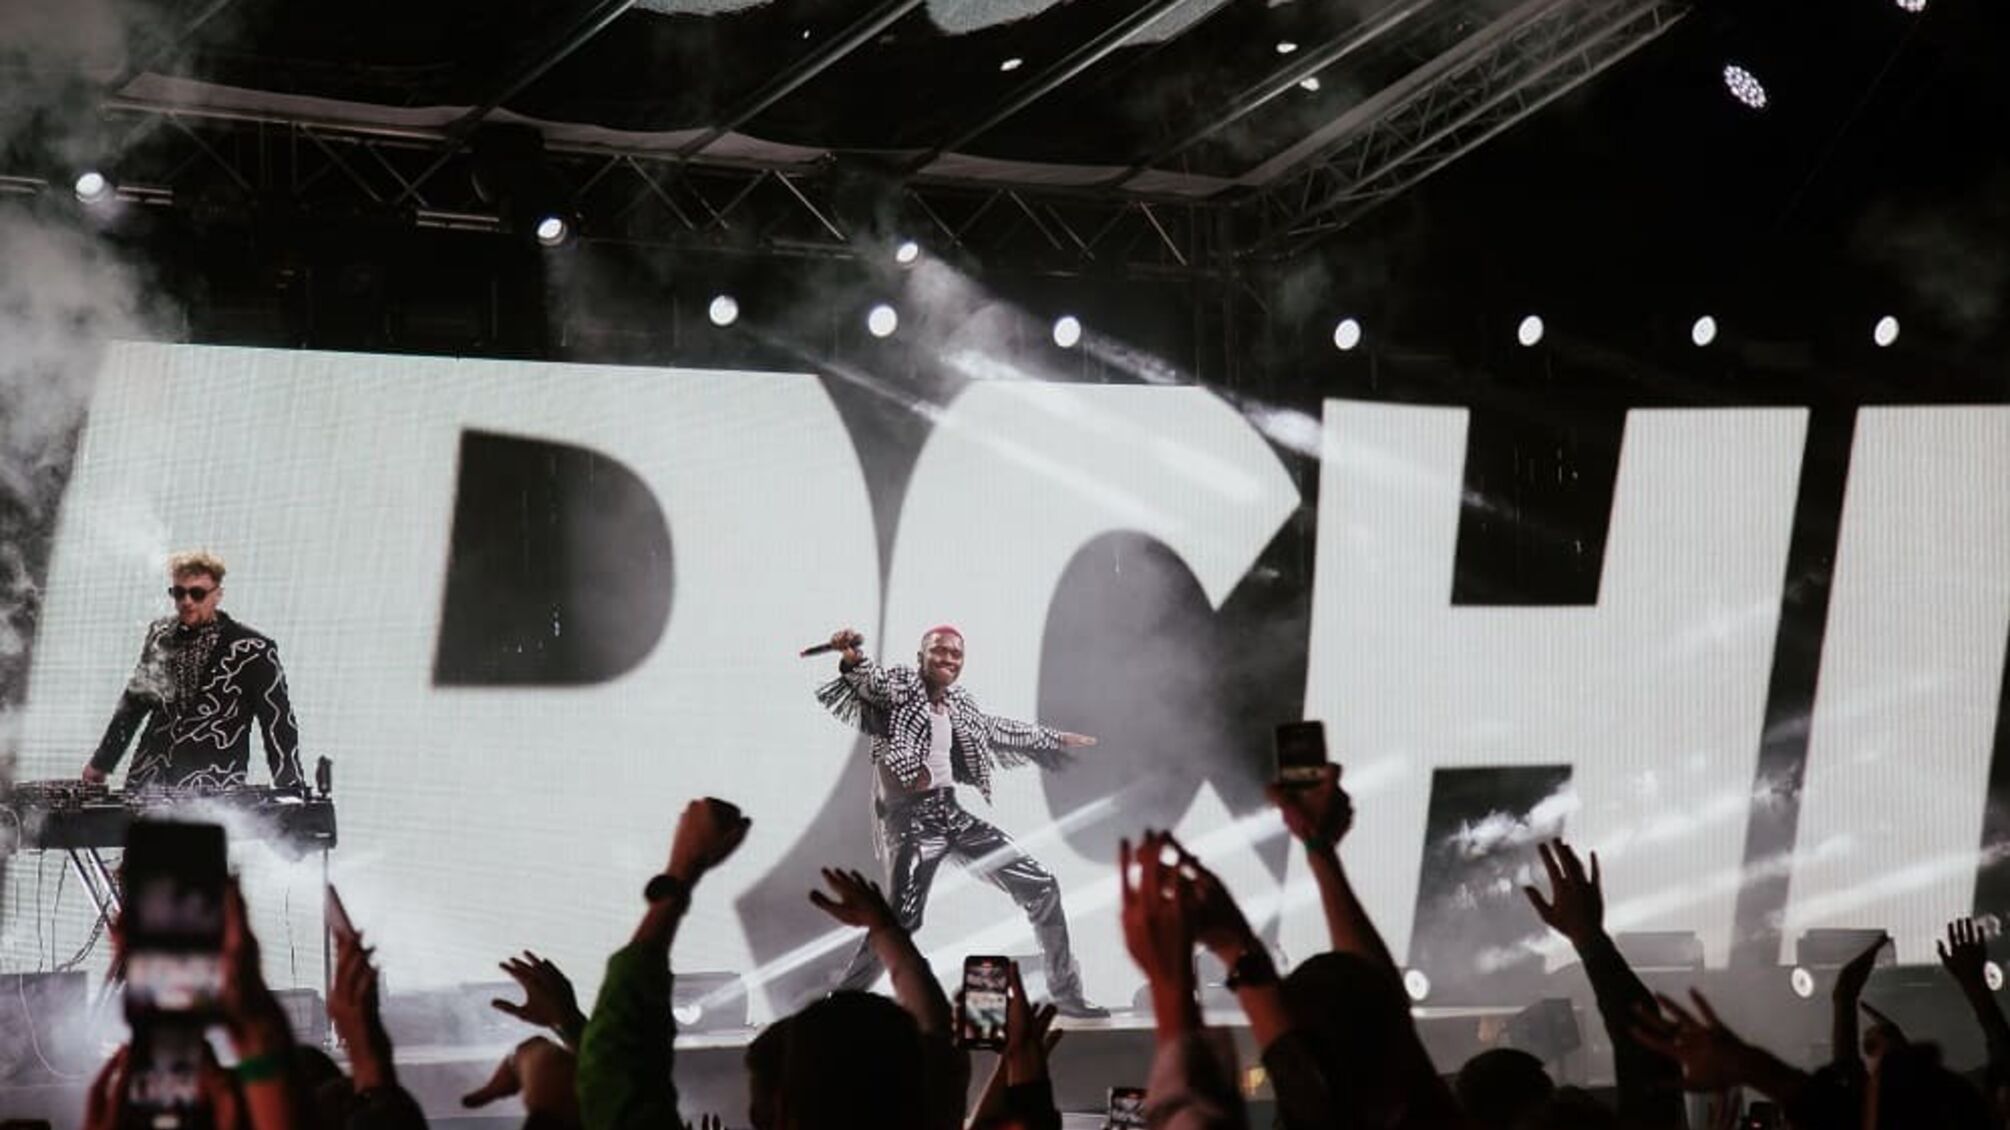 TVORCHI анонсировали грандиозное шоу в Киеве в поддержку нового альбома Planet X